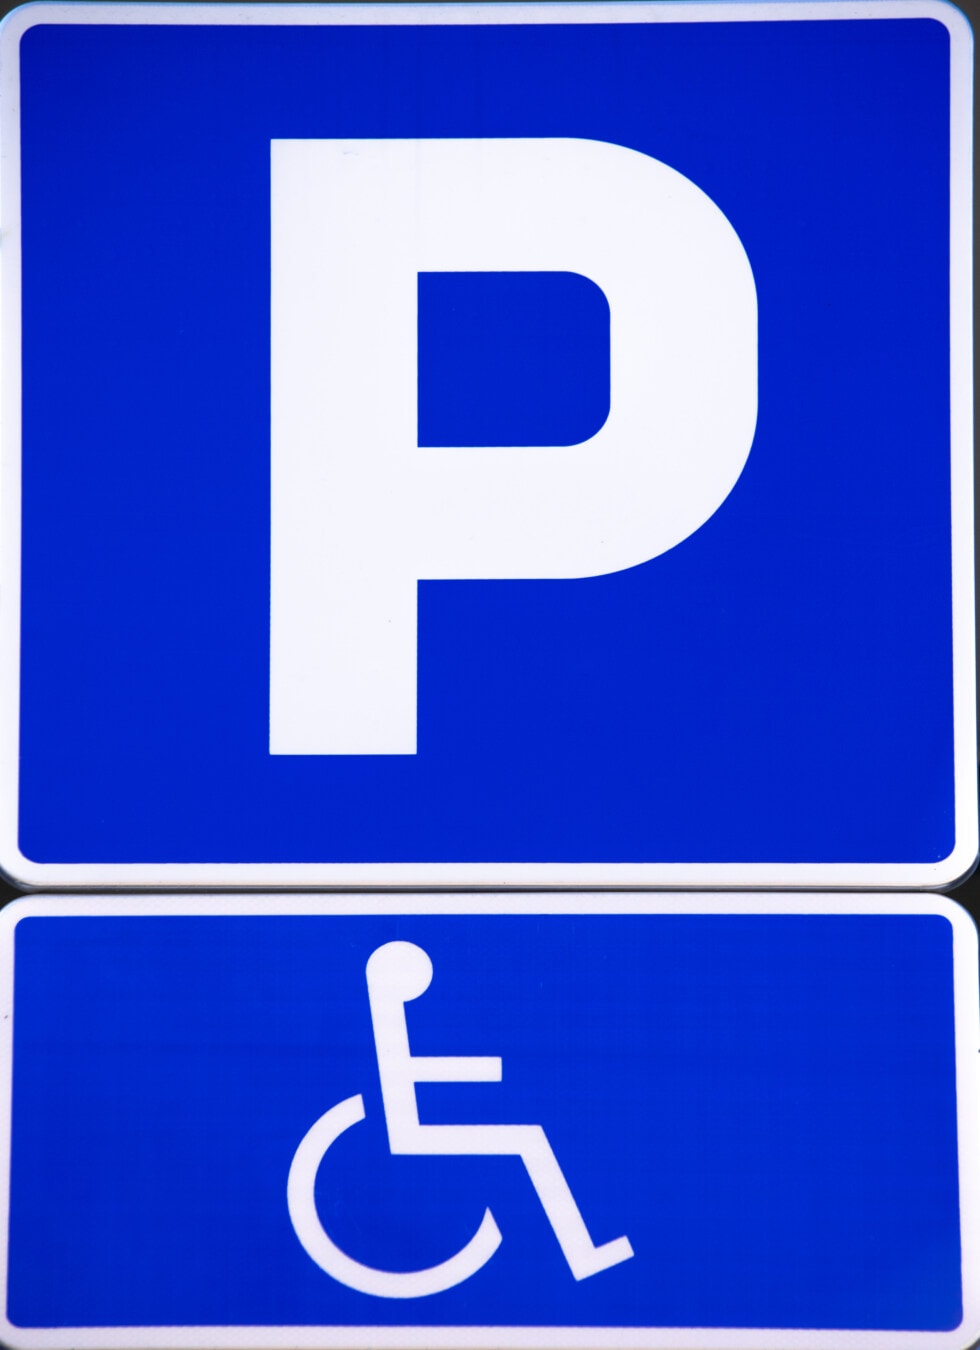 devre dışı, Otopark, tekerlekli sandalye, Otopark, işareti, bilgi, Uyarı, trafik kontrol, simge, sembol